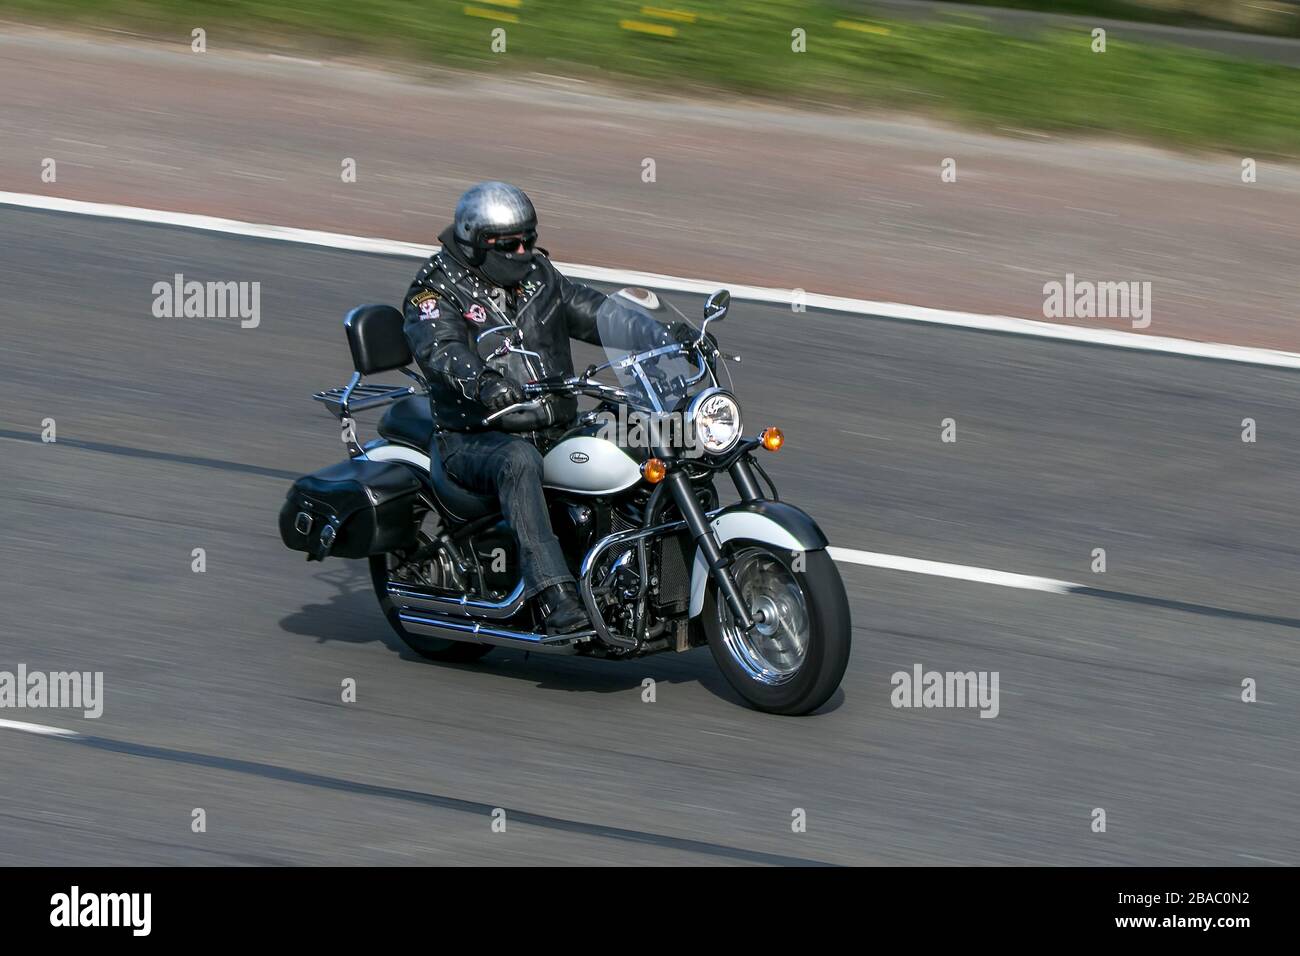 Harley Davidson Motorrad-Fahrer; zwei Radtransport, Motorräder, Fahrzeug, Motorräder, Radfahrer auf der Autobahn M6 Chorley, Großbritannien Stockfoto